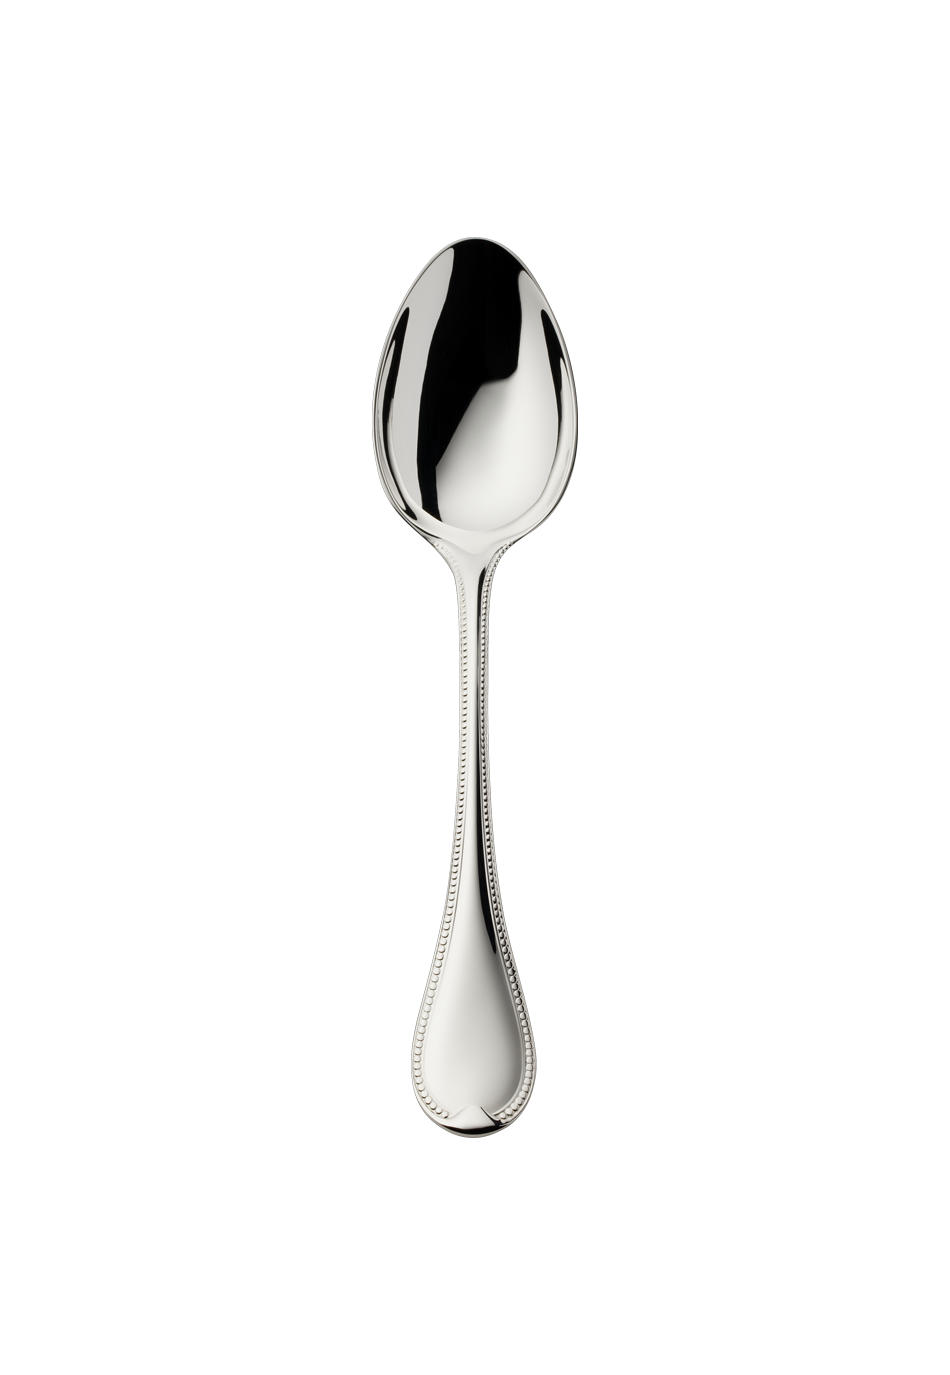 Französisch-Perl Dessert Spoon (150g massive silverplated)